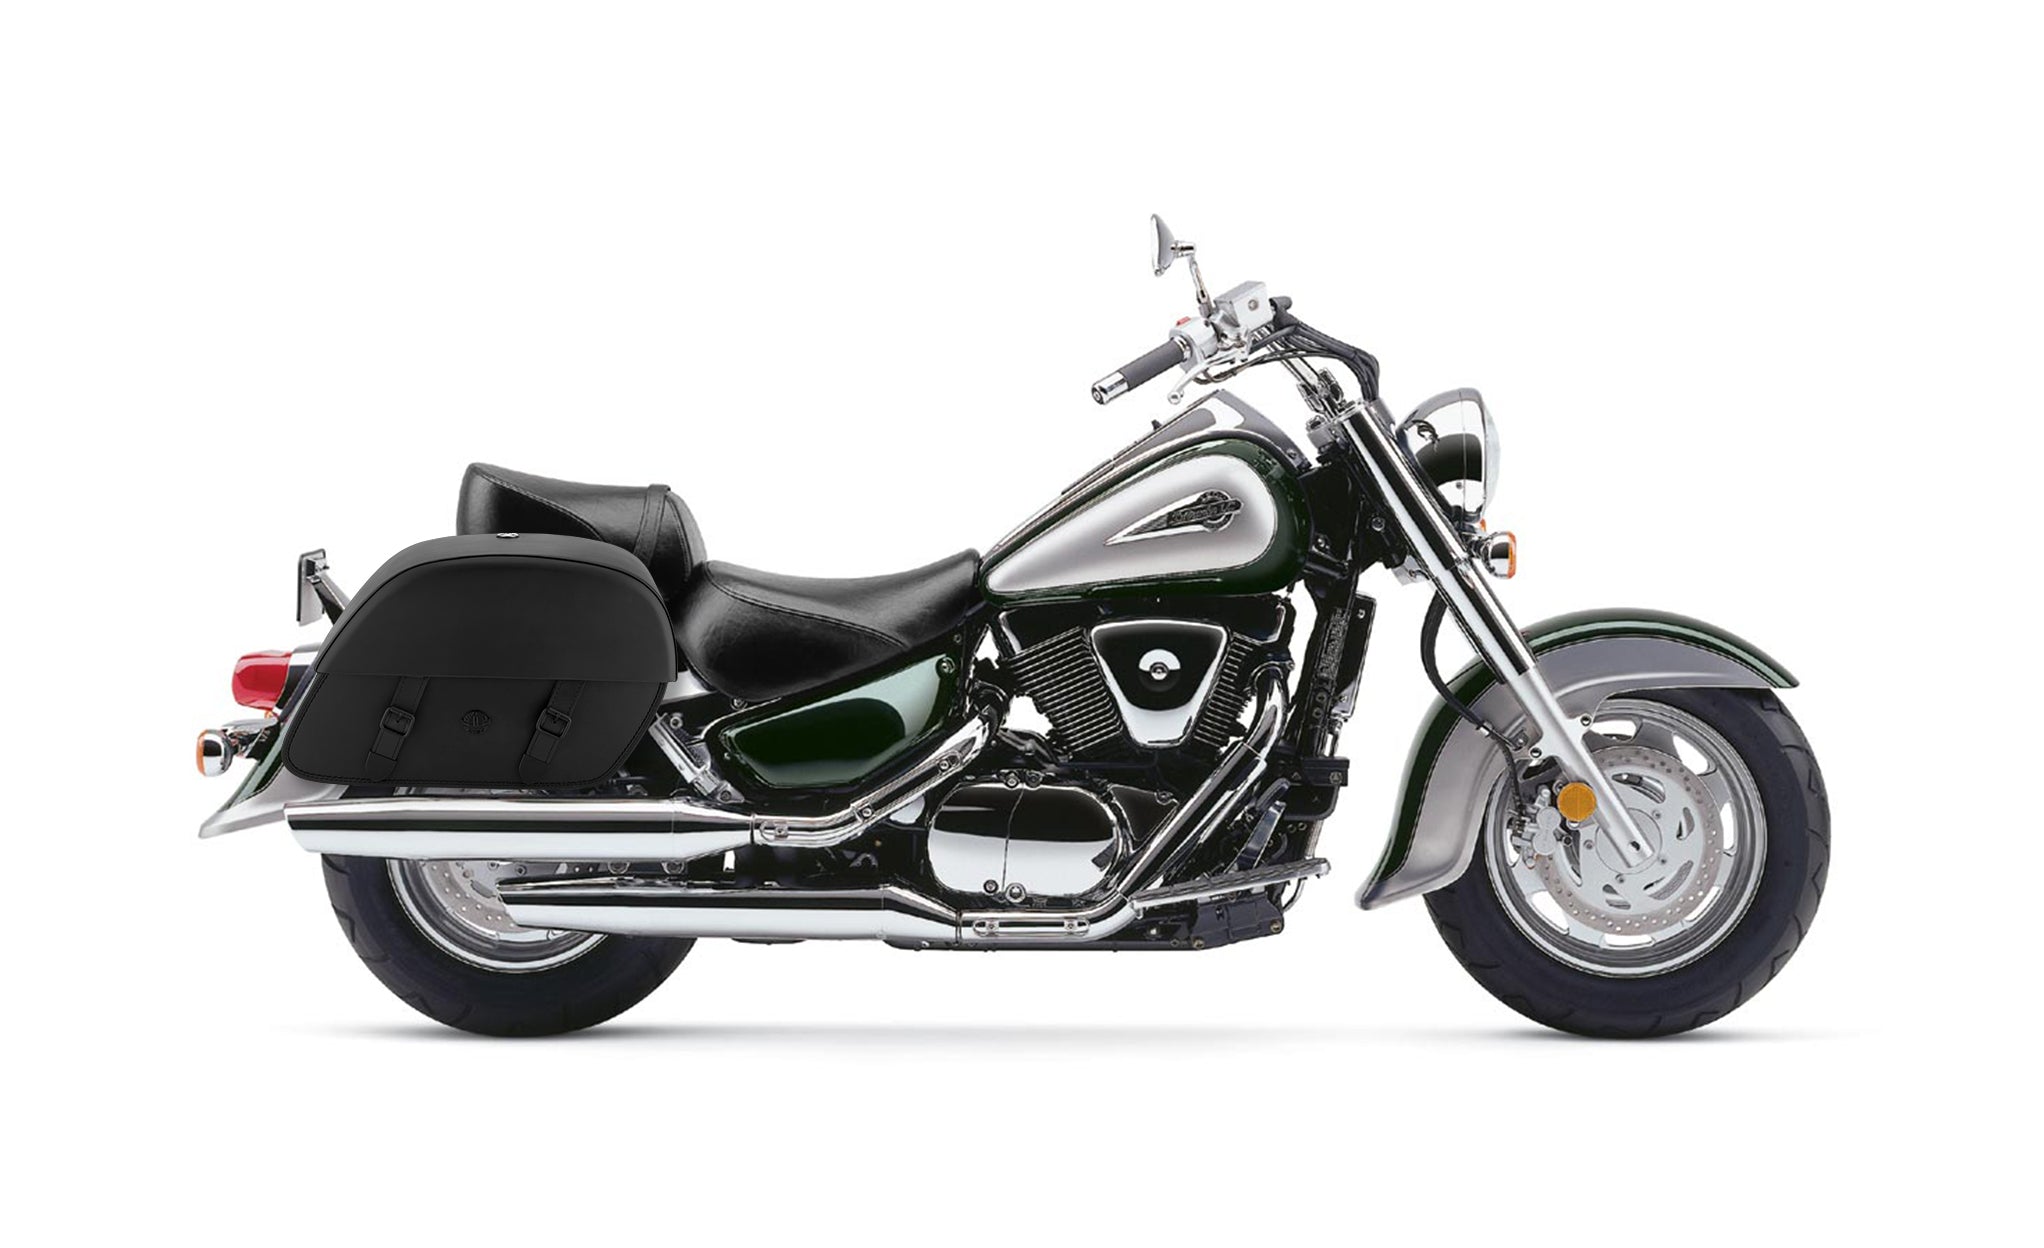 Viking Baelor Large Suzuki Intruder 1500 Vl1500 Leather Motorcycle Saddlebags on Bike Photo @expand